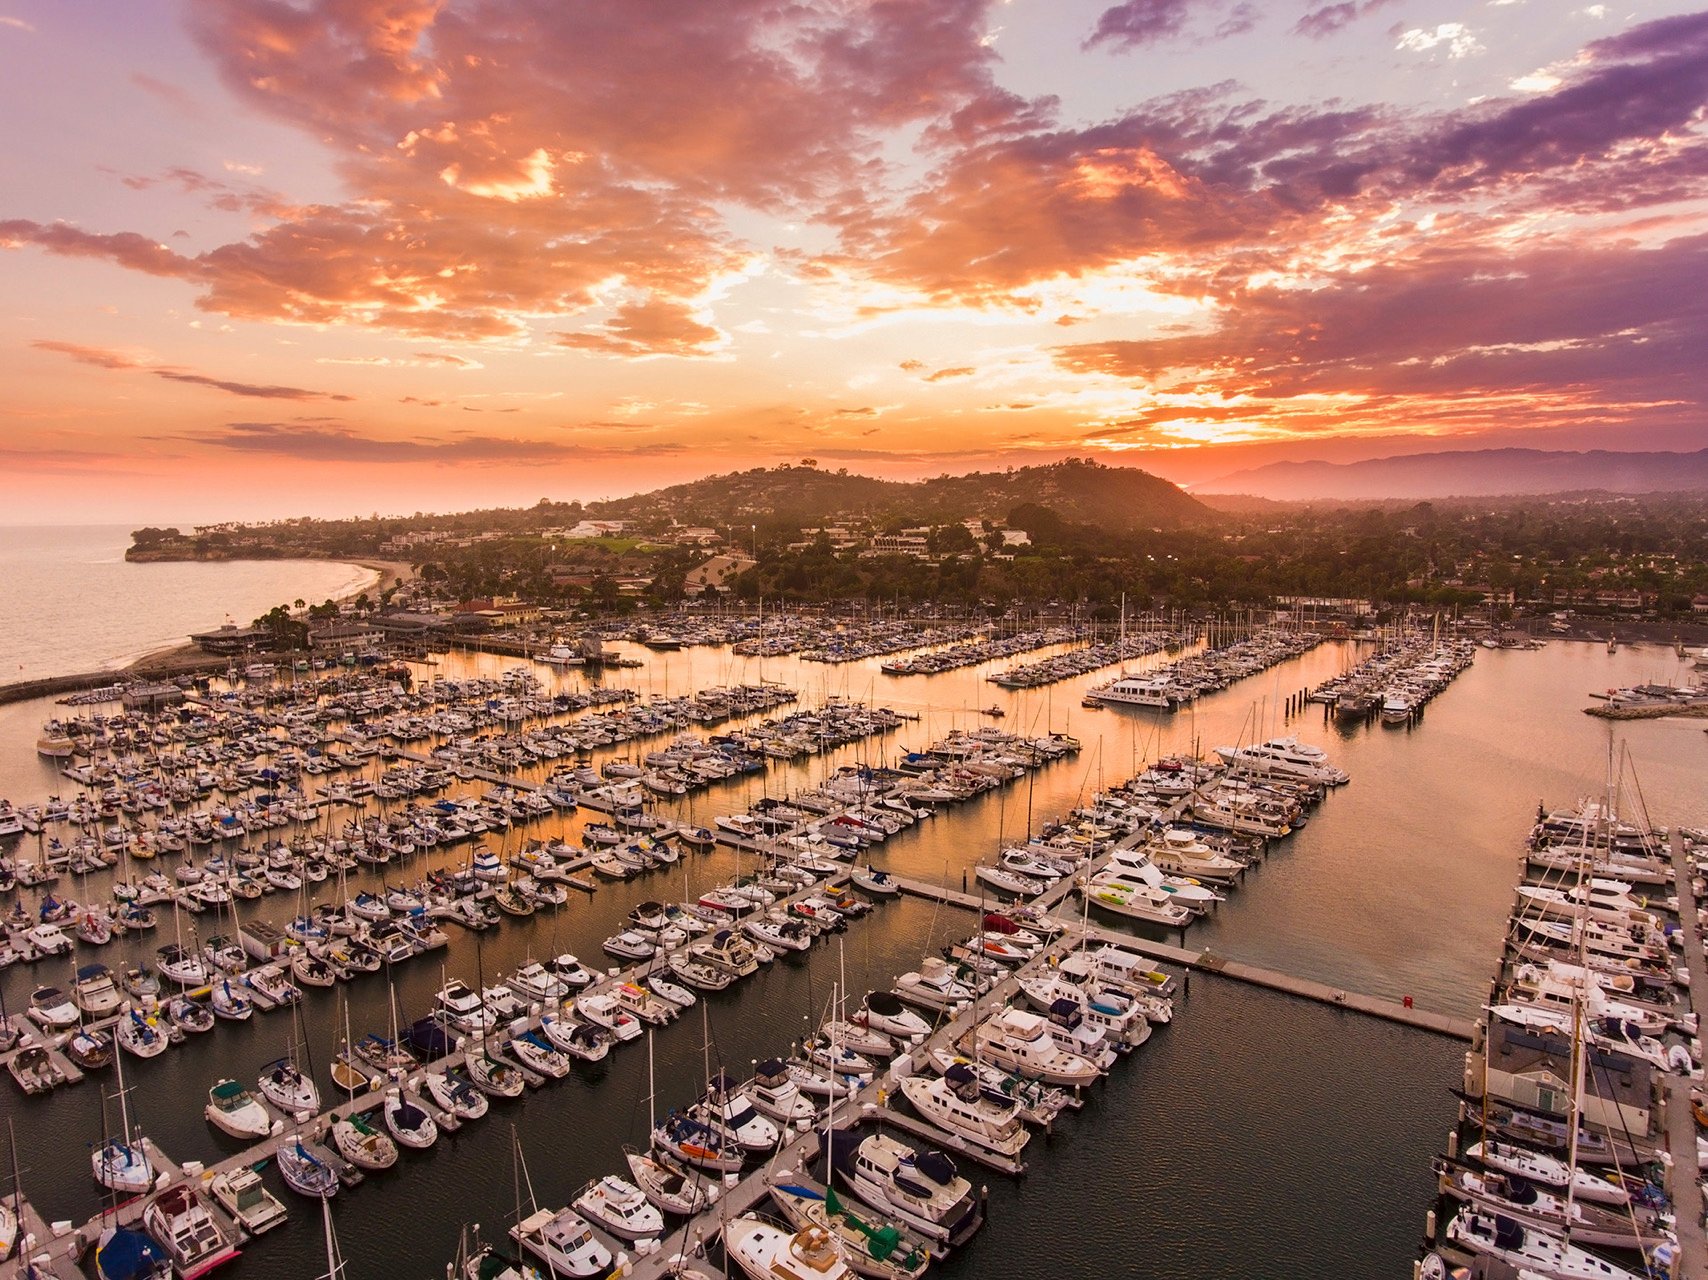 This is the marina in Santa Barbara.